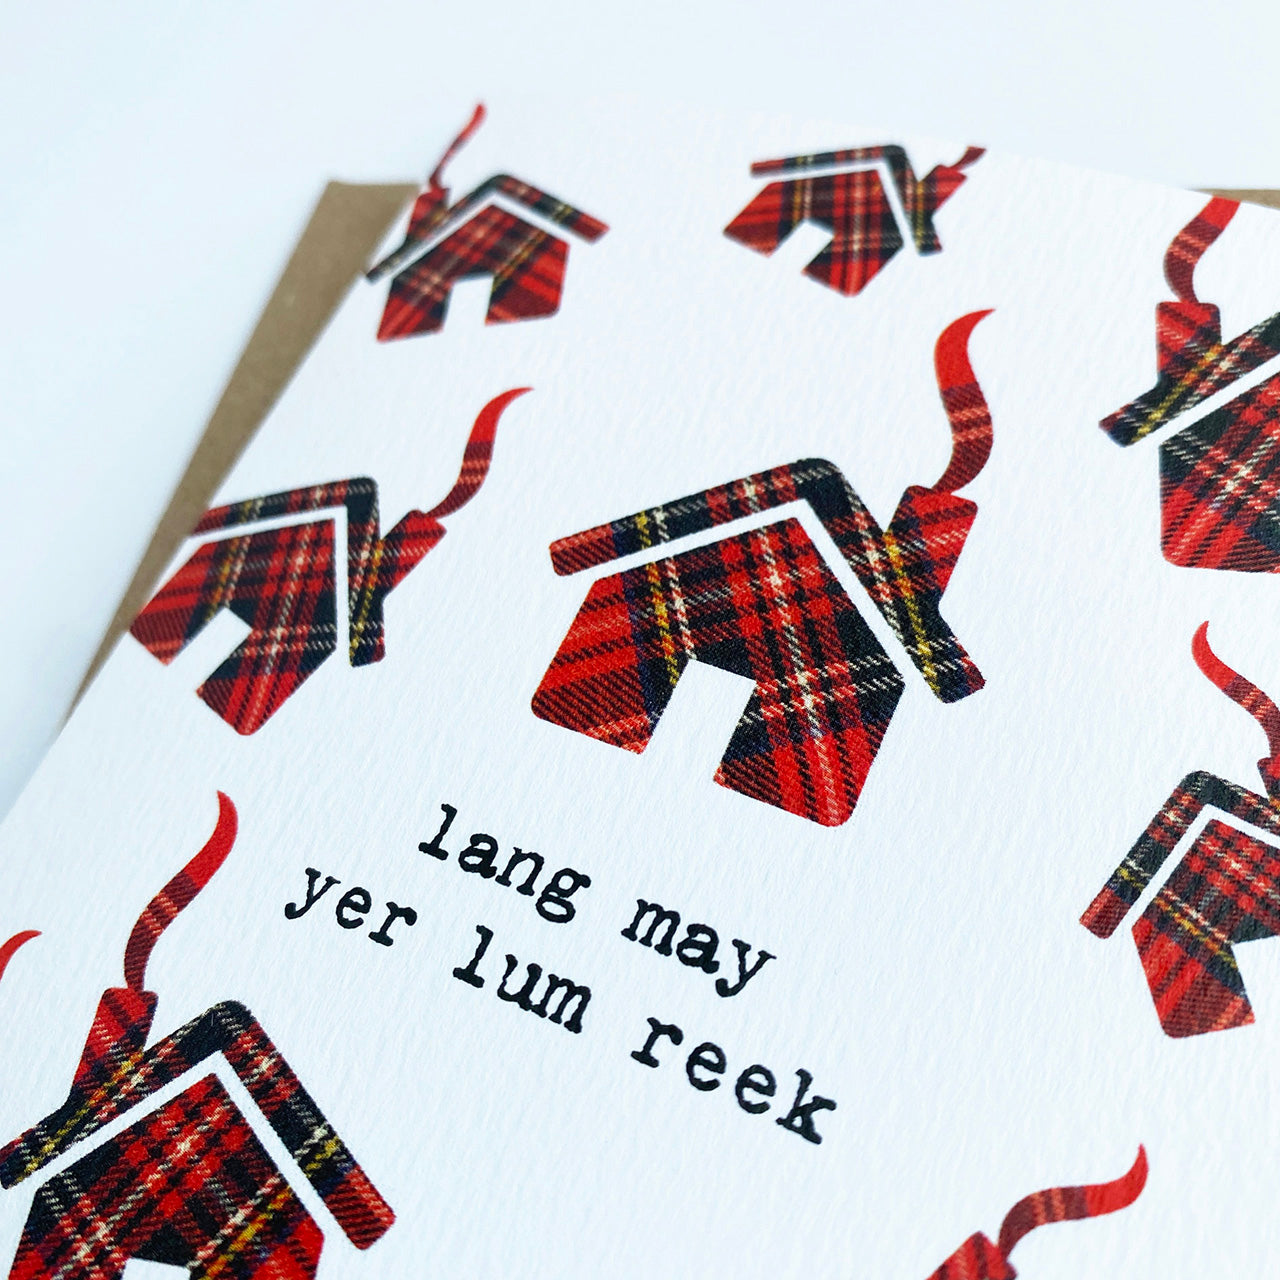 'Lang May Yer Lum Reek' Scottish Greeting Card - HiyaPal